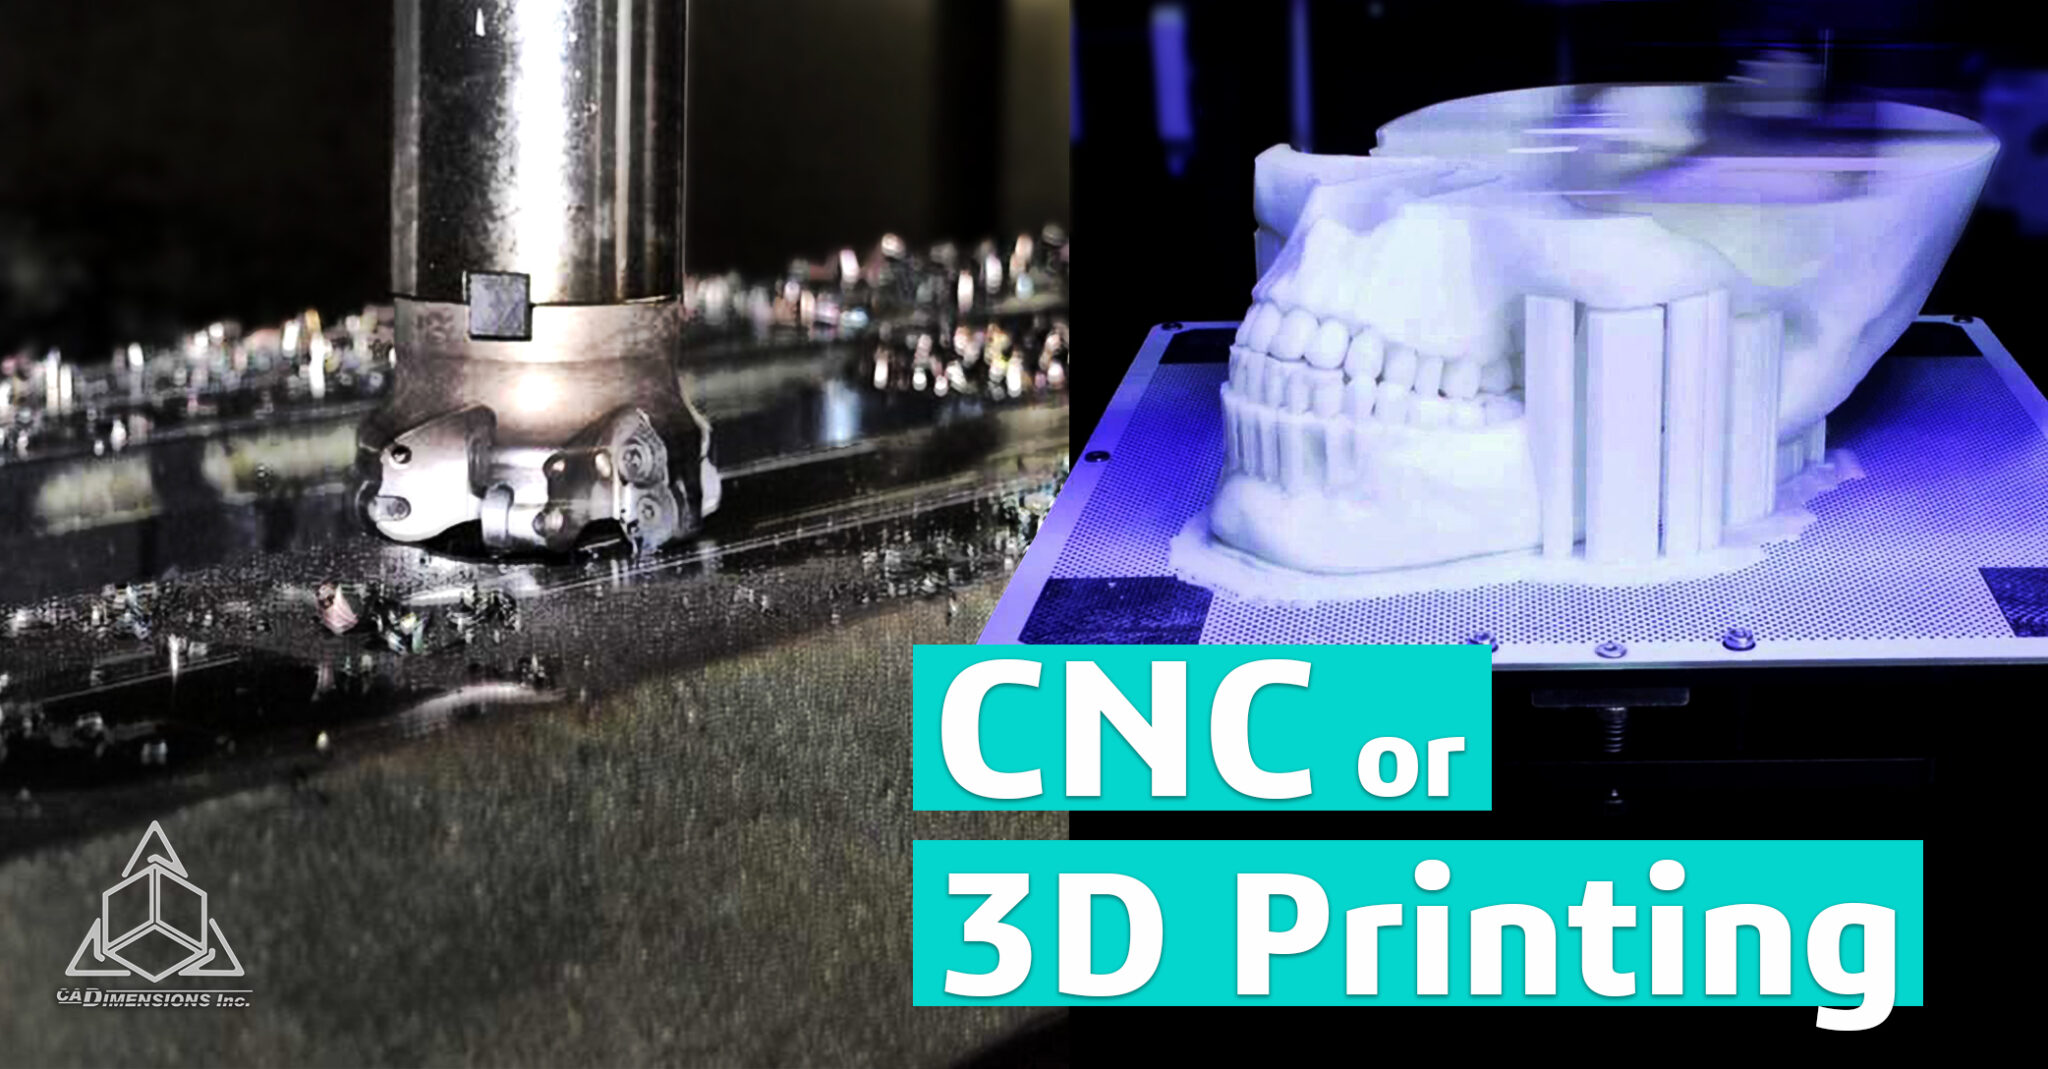 3D Printing or CNC